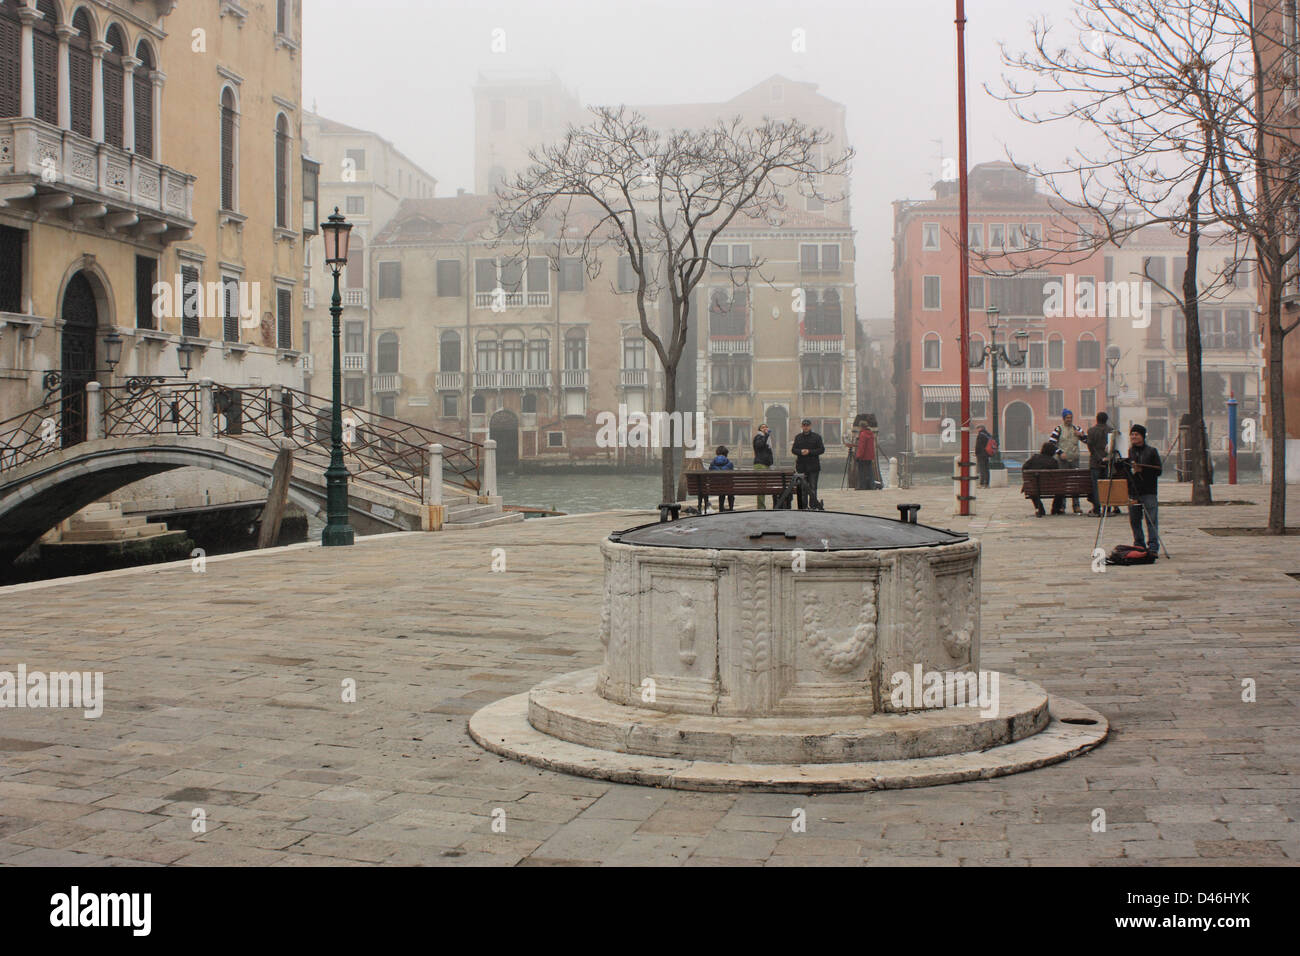 Foggy winter scene in Venice, Italy Stock Photo